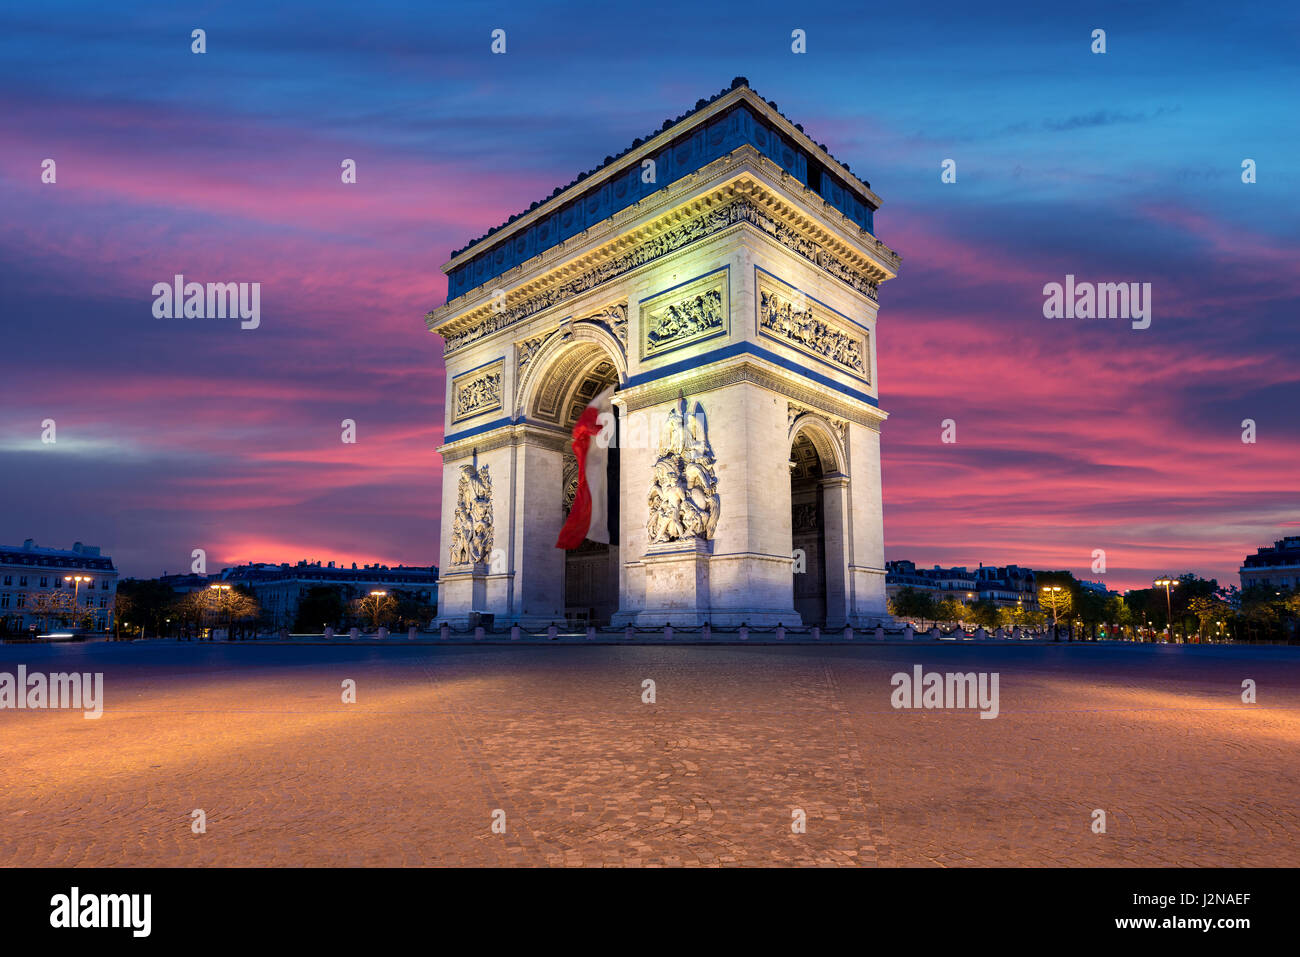 Arc de Triomphe e dagli Champs Elysees, punti di riferimento nel centro di Parigi, al tramonto. Parigi, Francia Foto Stock